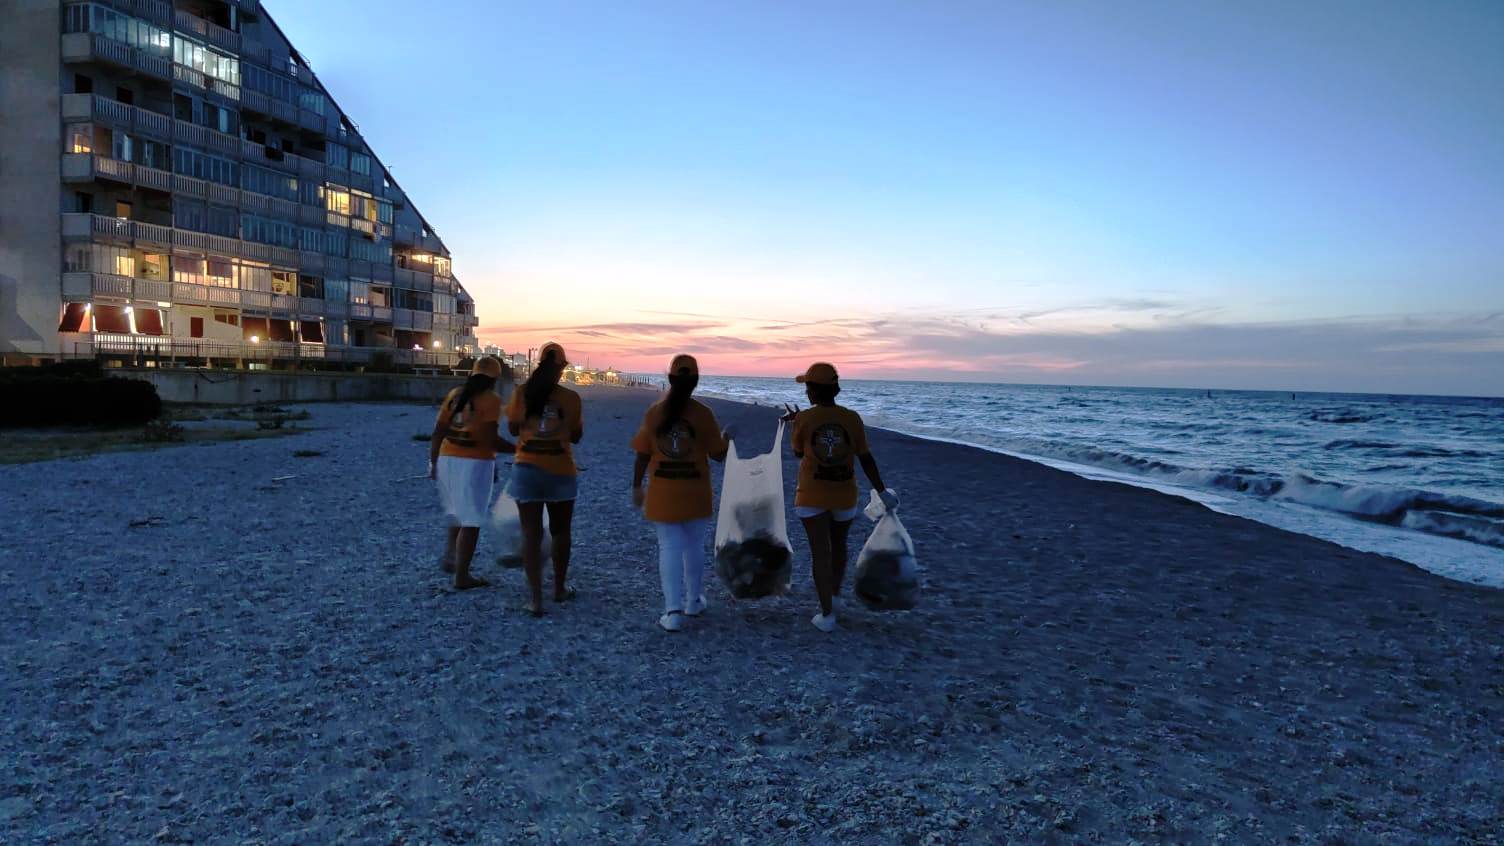 Foto 2 - Combattere il degrado e l’inquinamento ambientale raccogliendo plastica e cartacce: volontari all’opera per una pulizia della spiaggia a Marotta